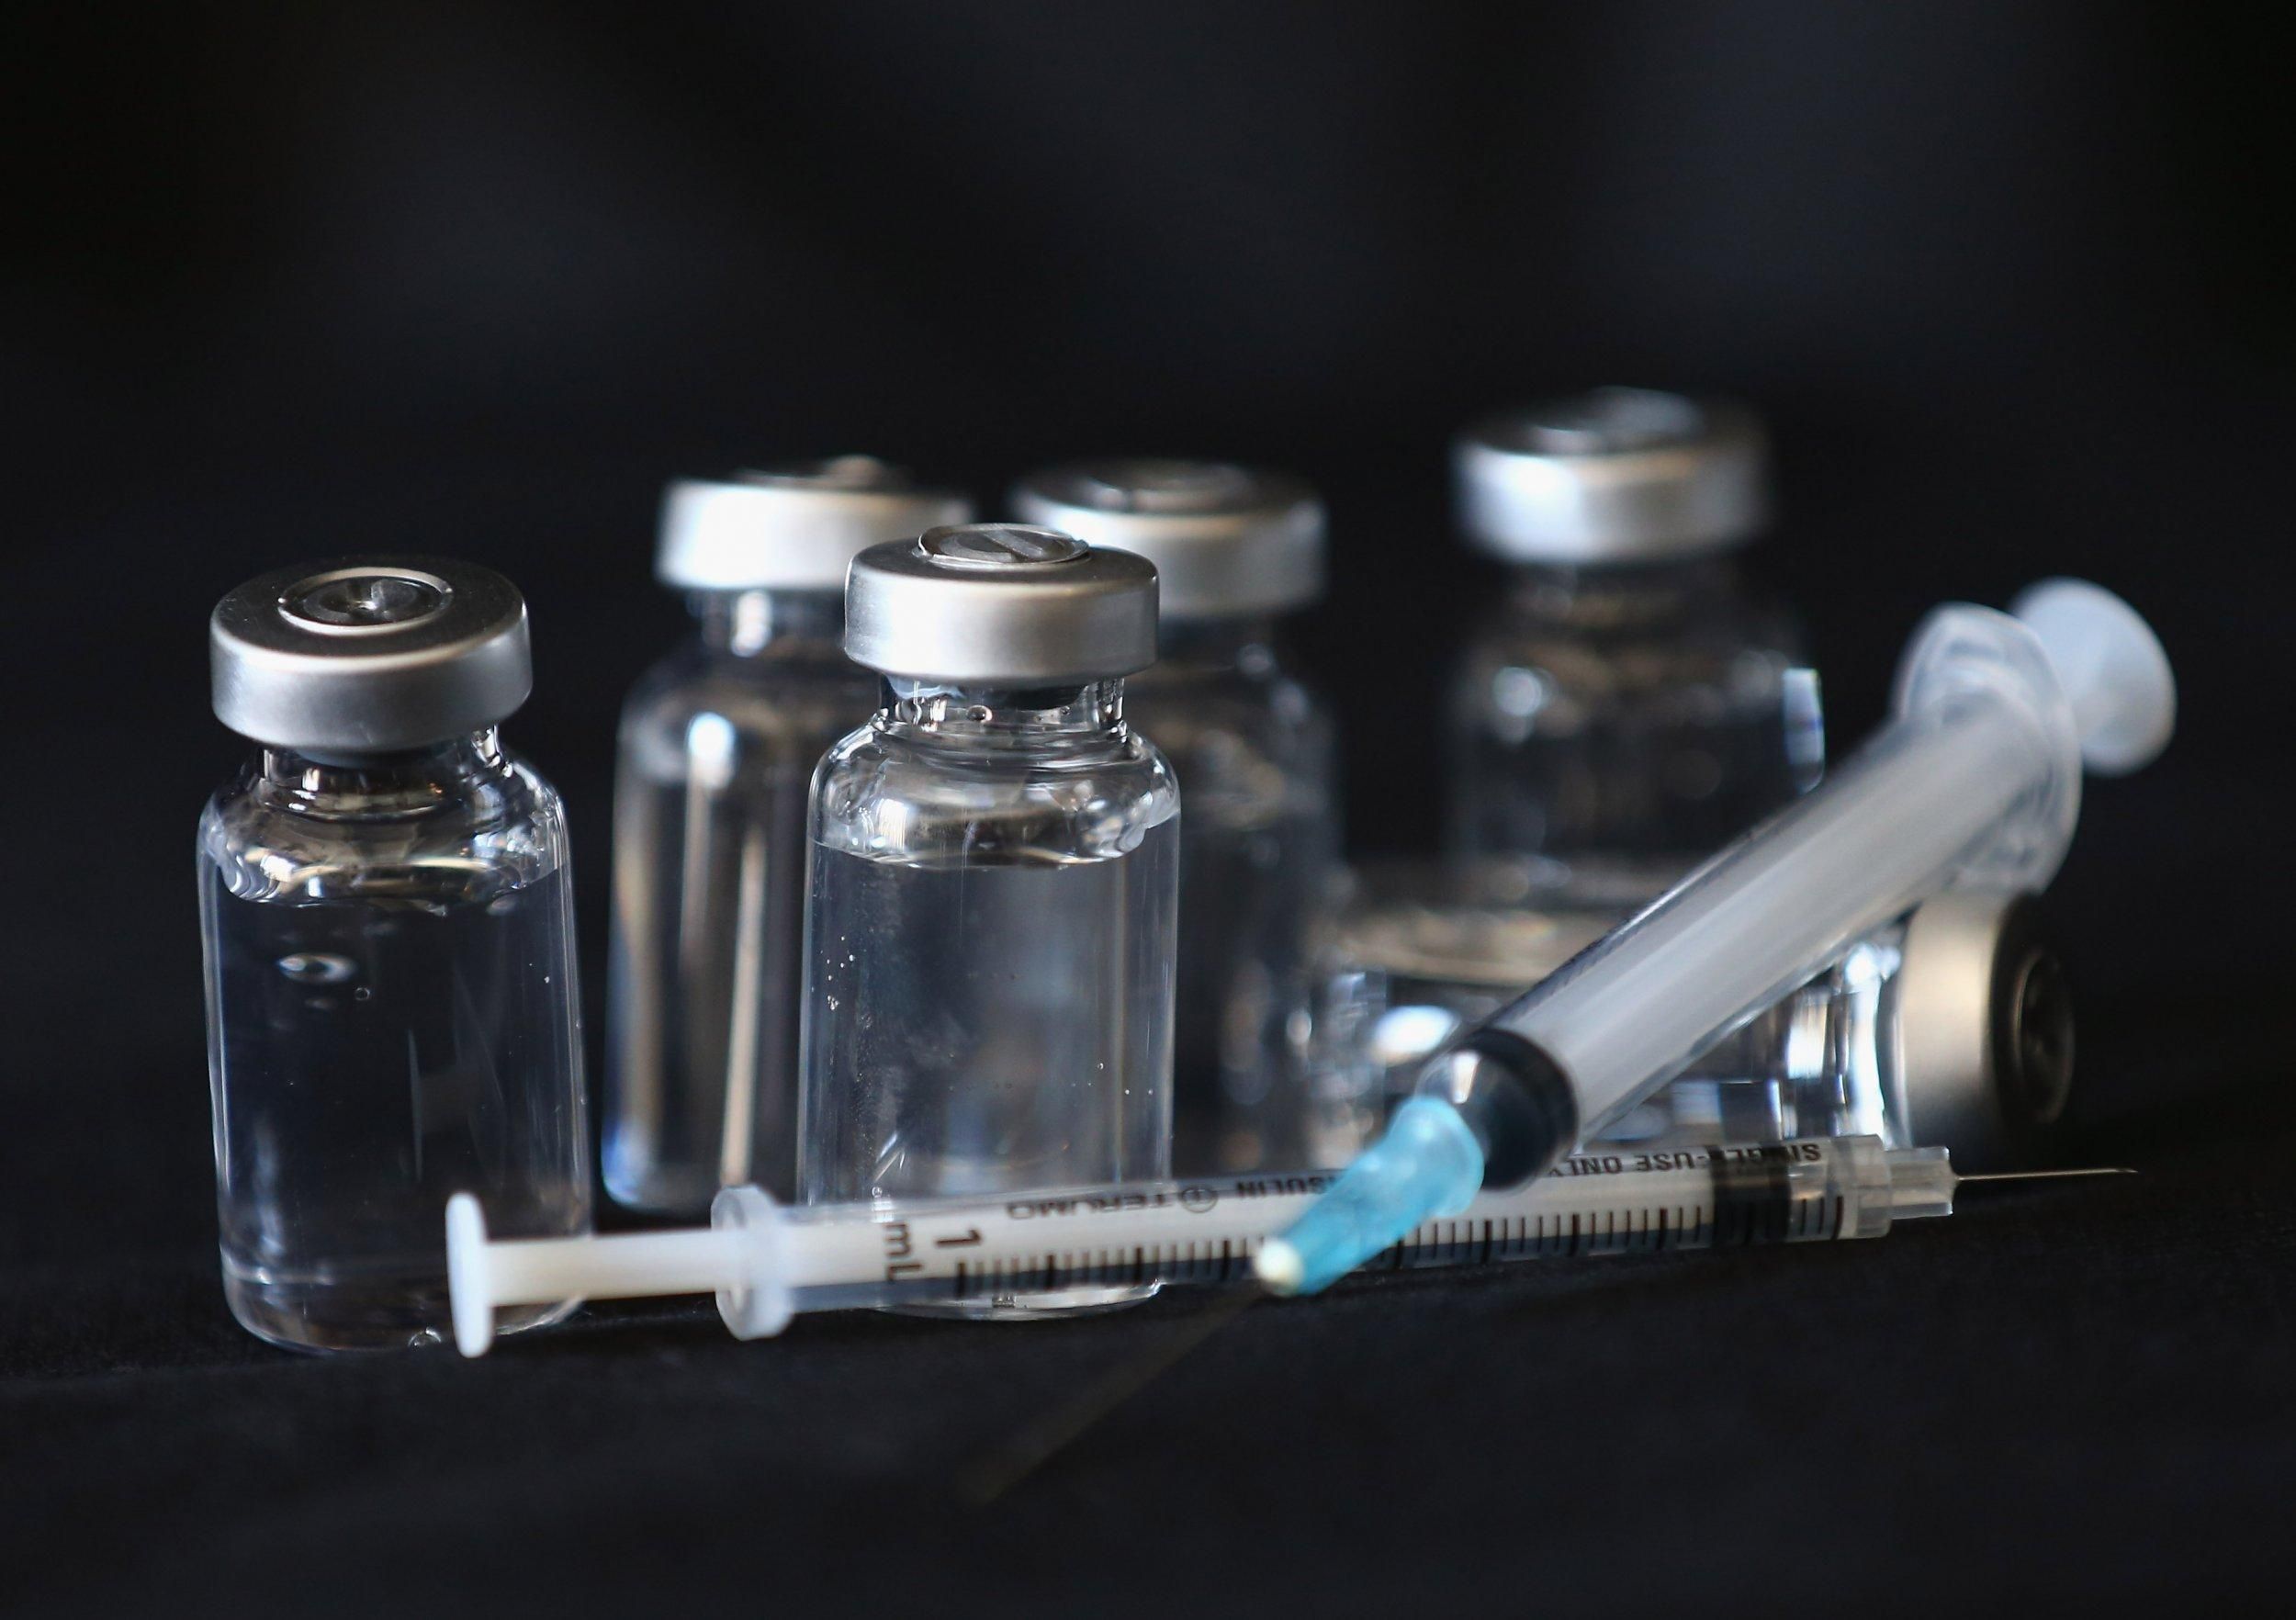 Білорусь випустить вакцину проти коронавірусу у 2023 році, – заява Лукашенко - Новини Здоров’я